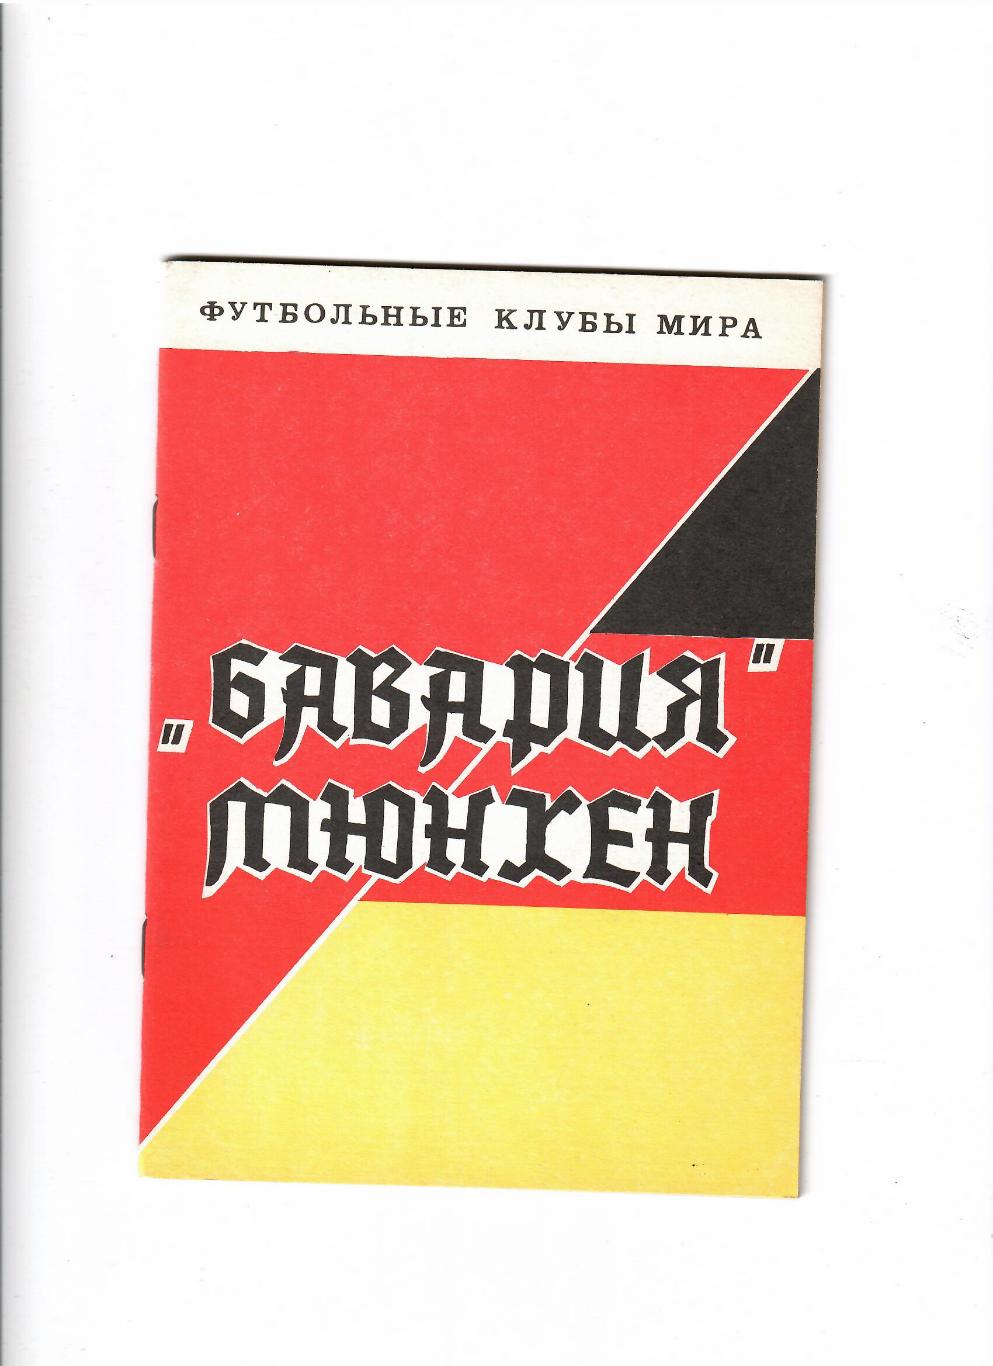 Футбольные клубы мираБавария Мюнхен Днепропетровск 1993, 48 стр.